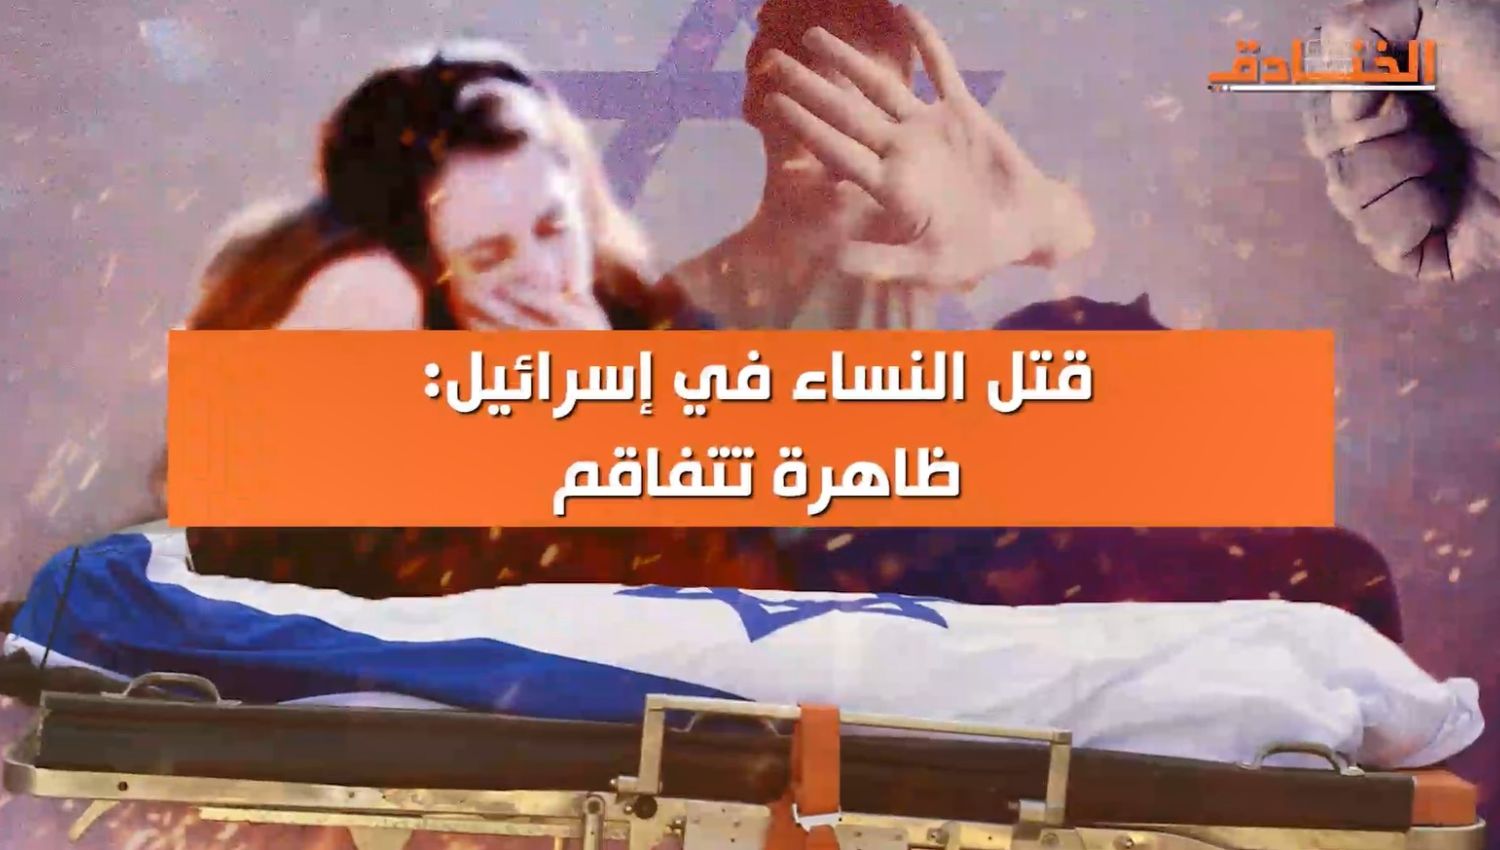 قتل النساء في "إسرائيل": ظاهرة تتفاقم